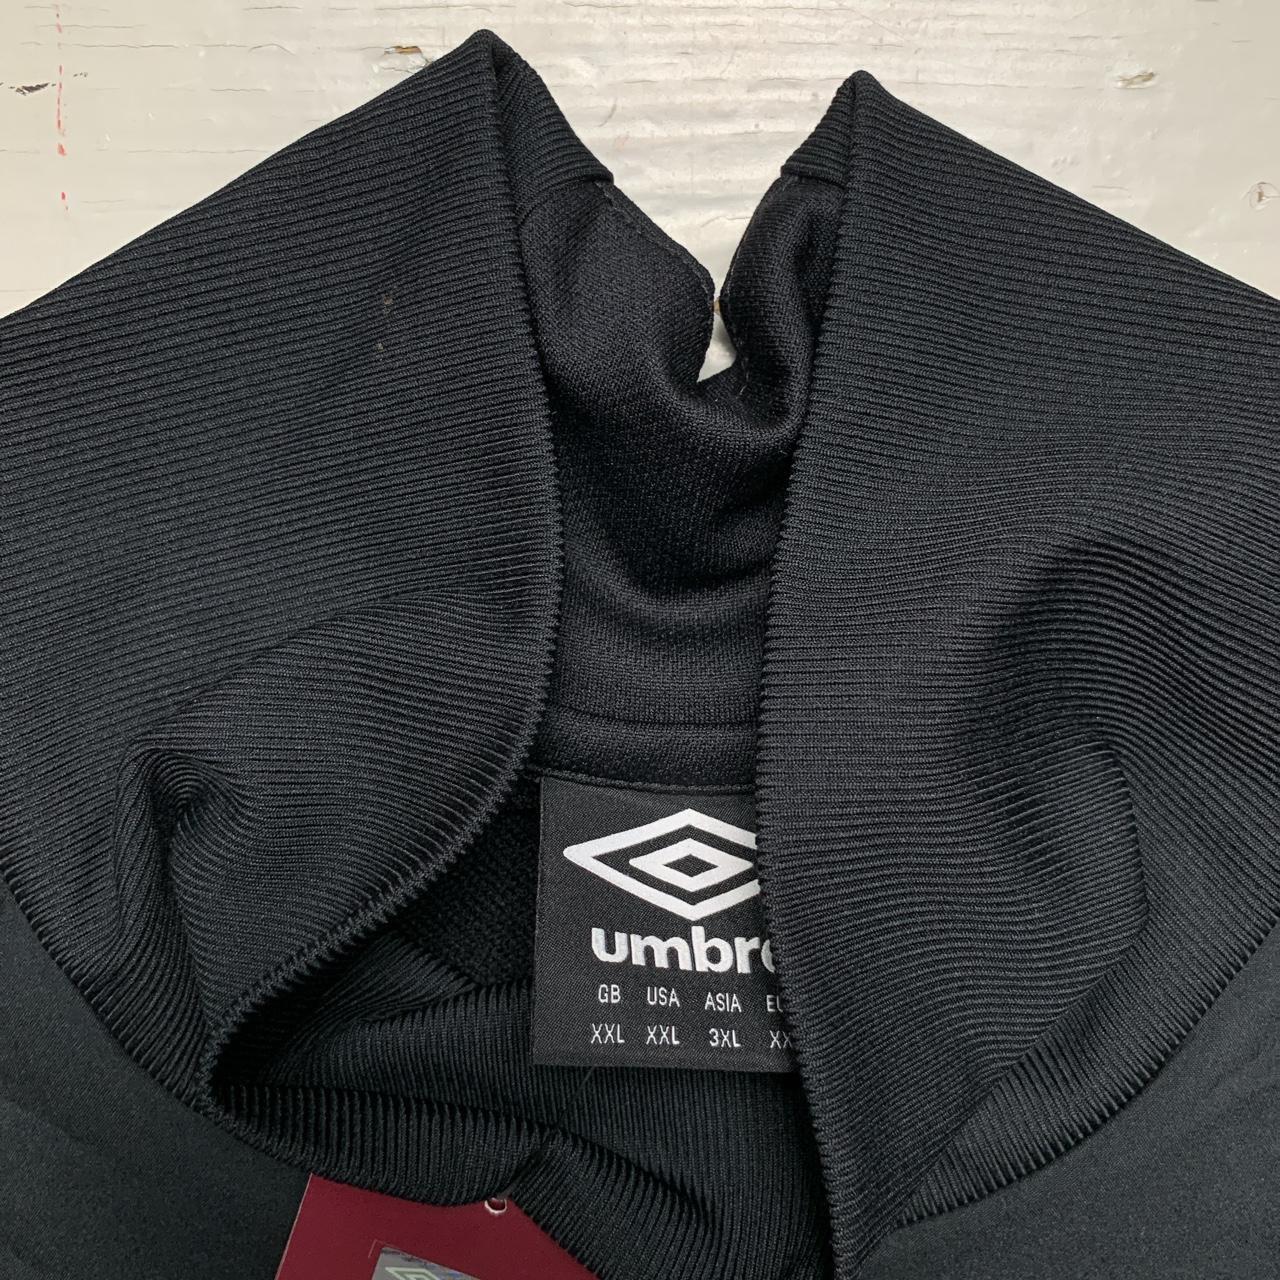 West Ham United Football Umbro Tracksuit Jumper Jacket